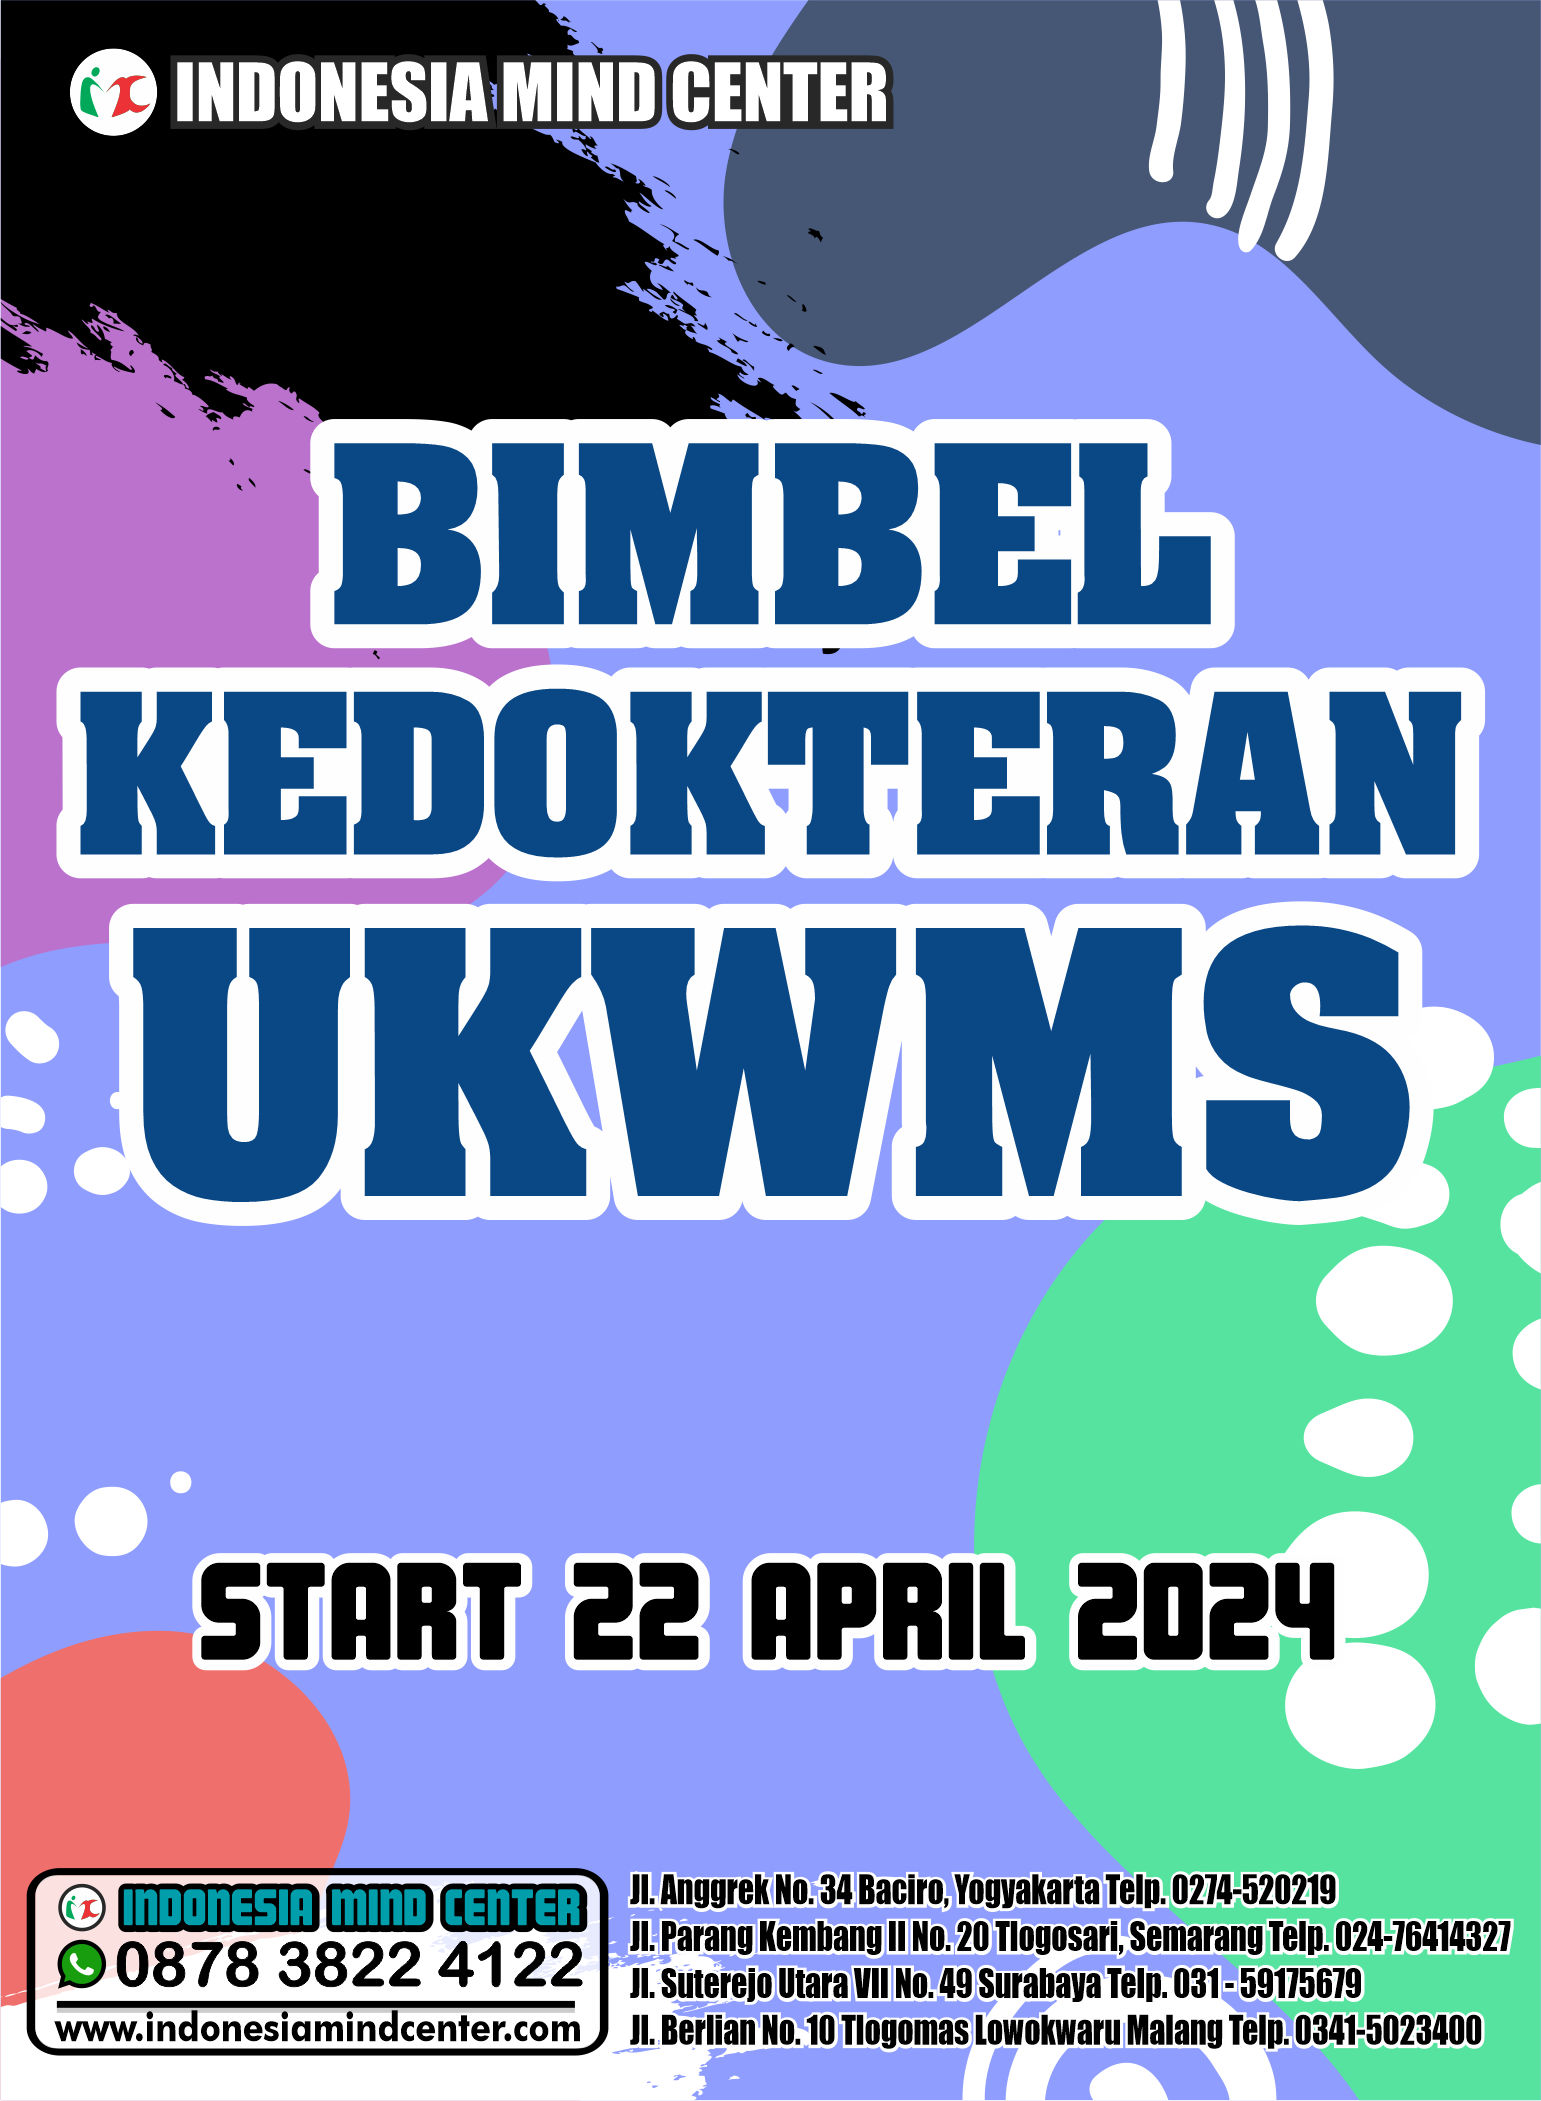 BIMBEL KEDOKTERAN UKWMS START 22 APRIL 2024